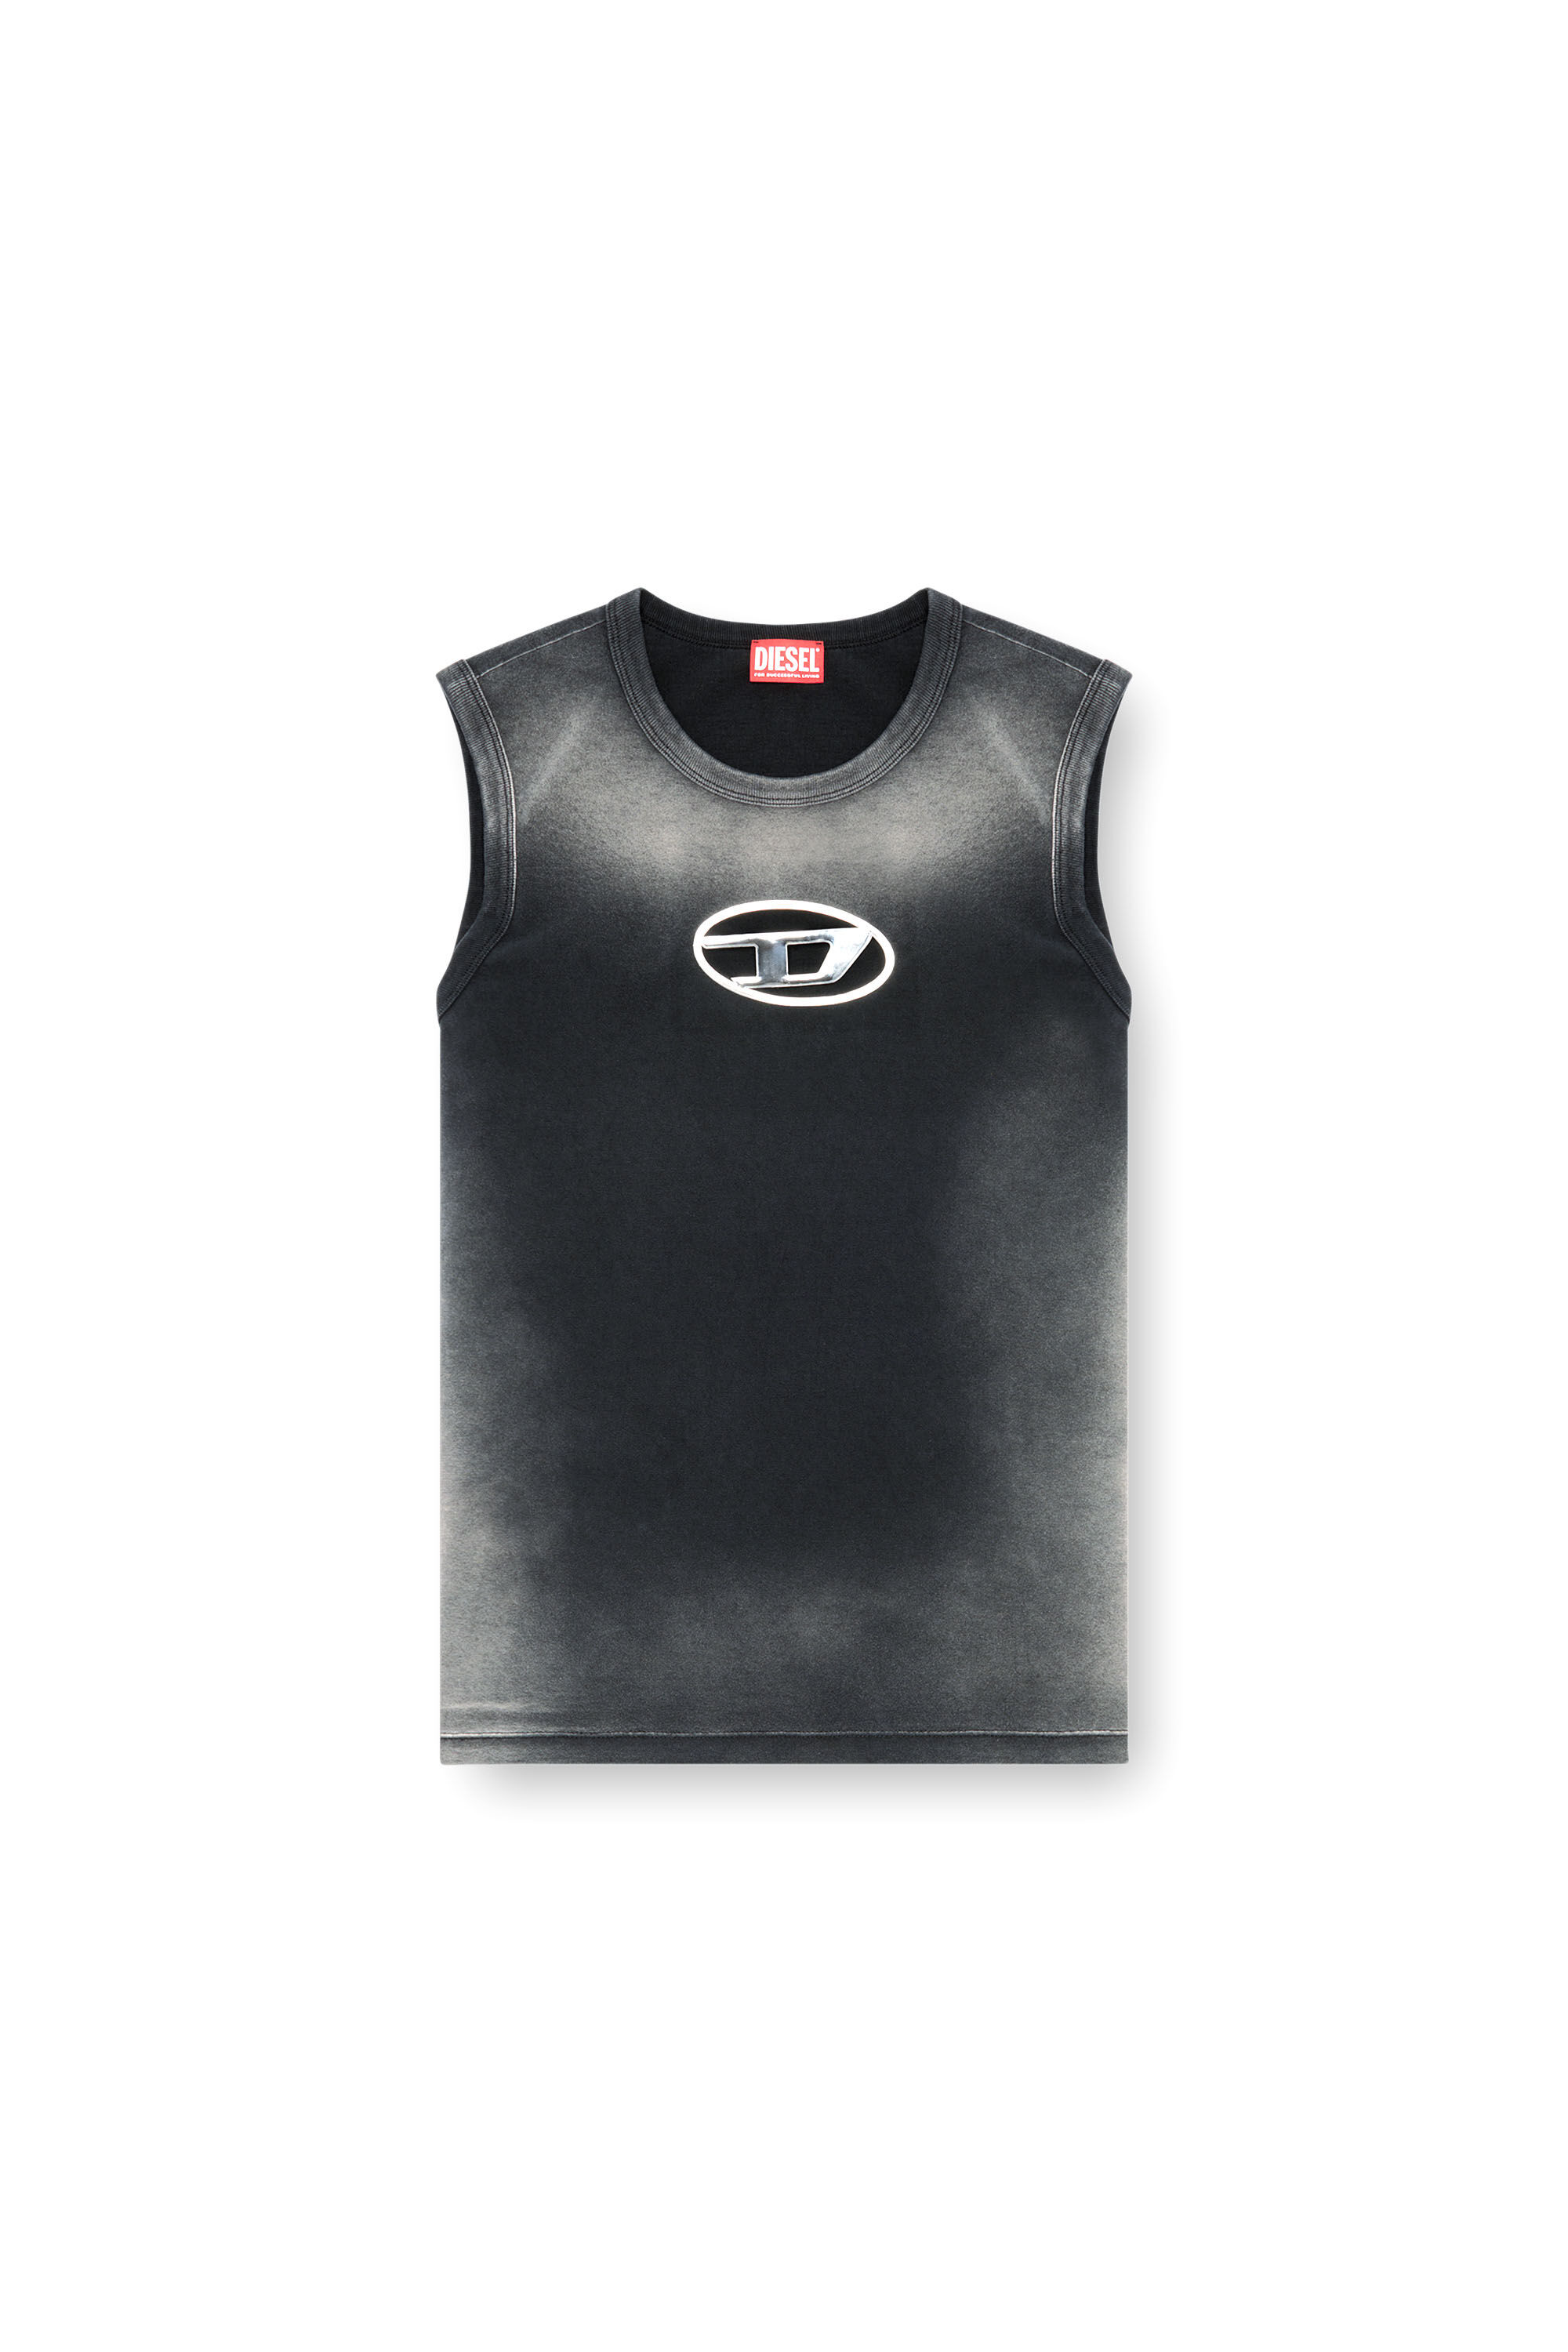 Diesel - T-BRICO, Hombre Camiseta sin mangas desteñida con Oval D en relieve in Negro - Image 2